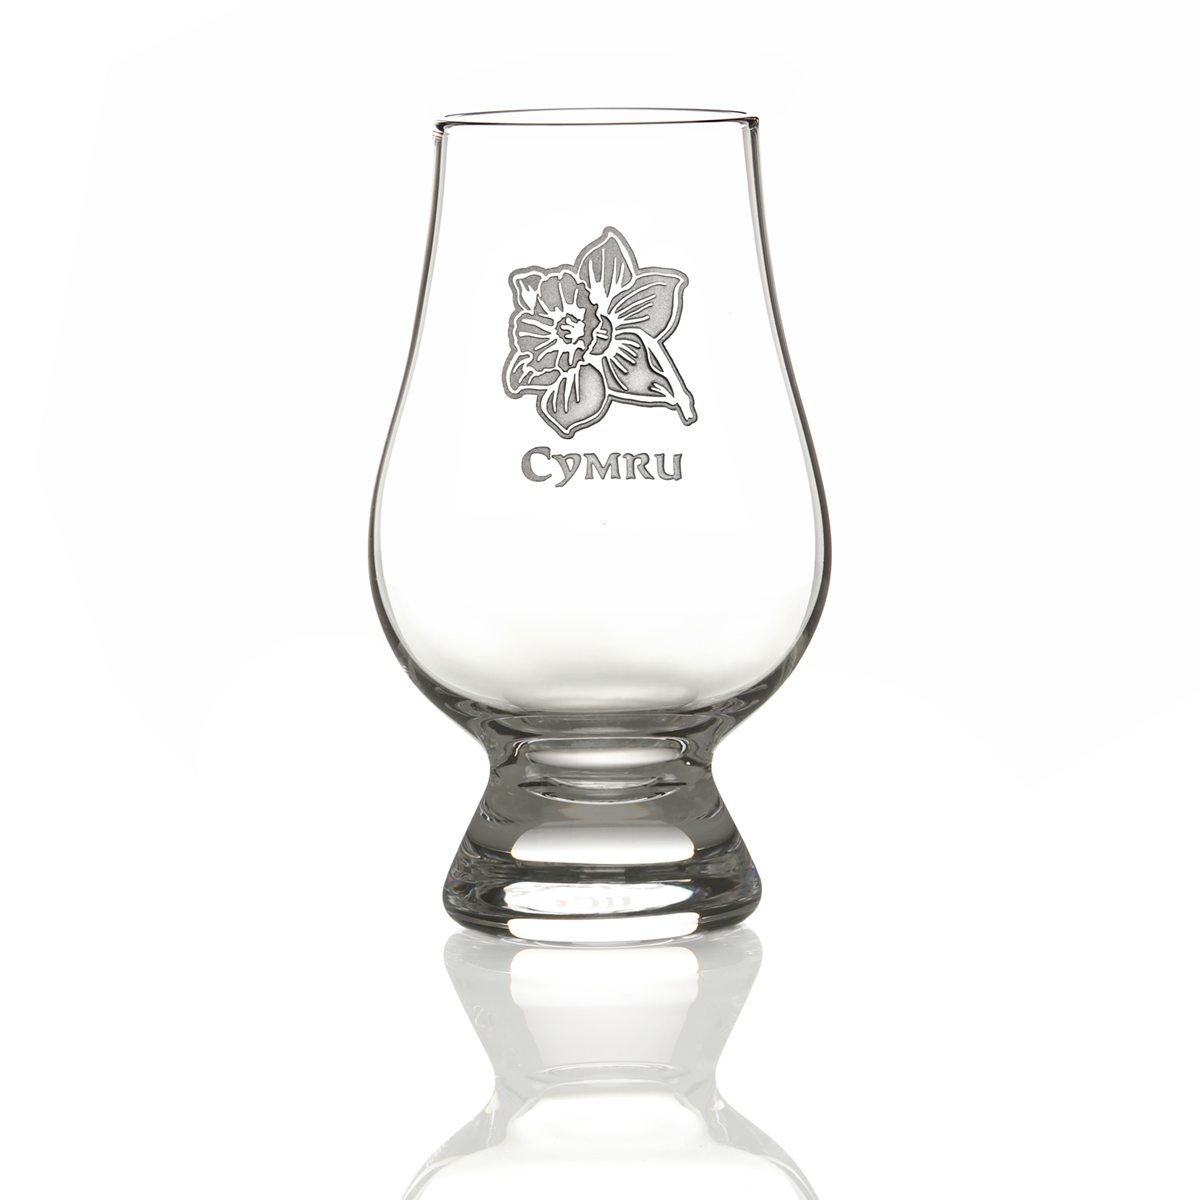 Glencairn Whisky Tasting Glas mit Gravur 'Cymru' (Wales) & walisische Narzisse